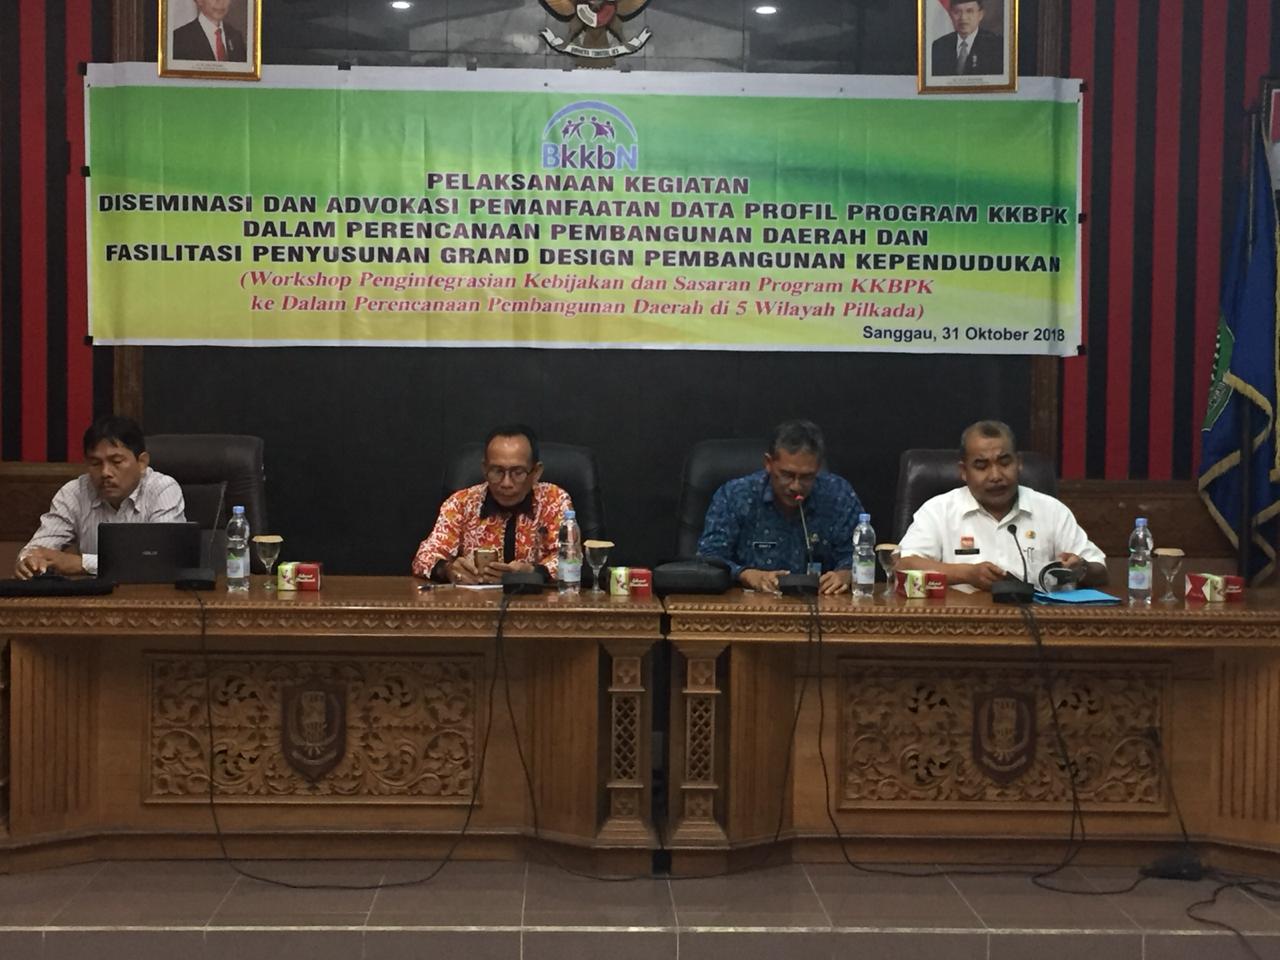 Workshop Kebijakan Sasaran Program KKBPK Dalam Perencanaan Pembangunan Daerah di wilayah Kab.Sanggau